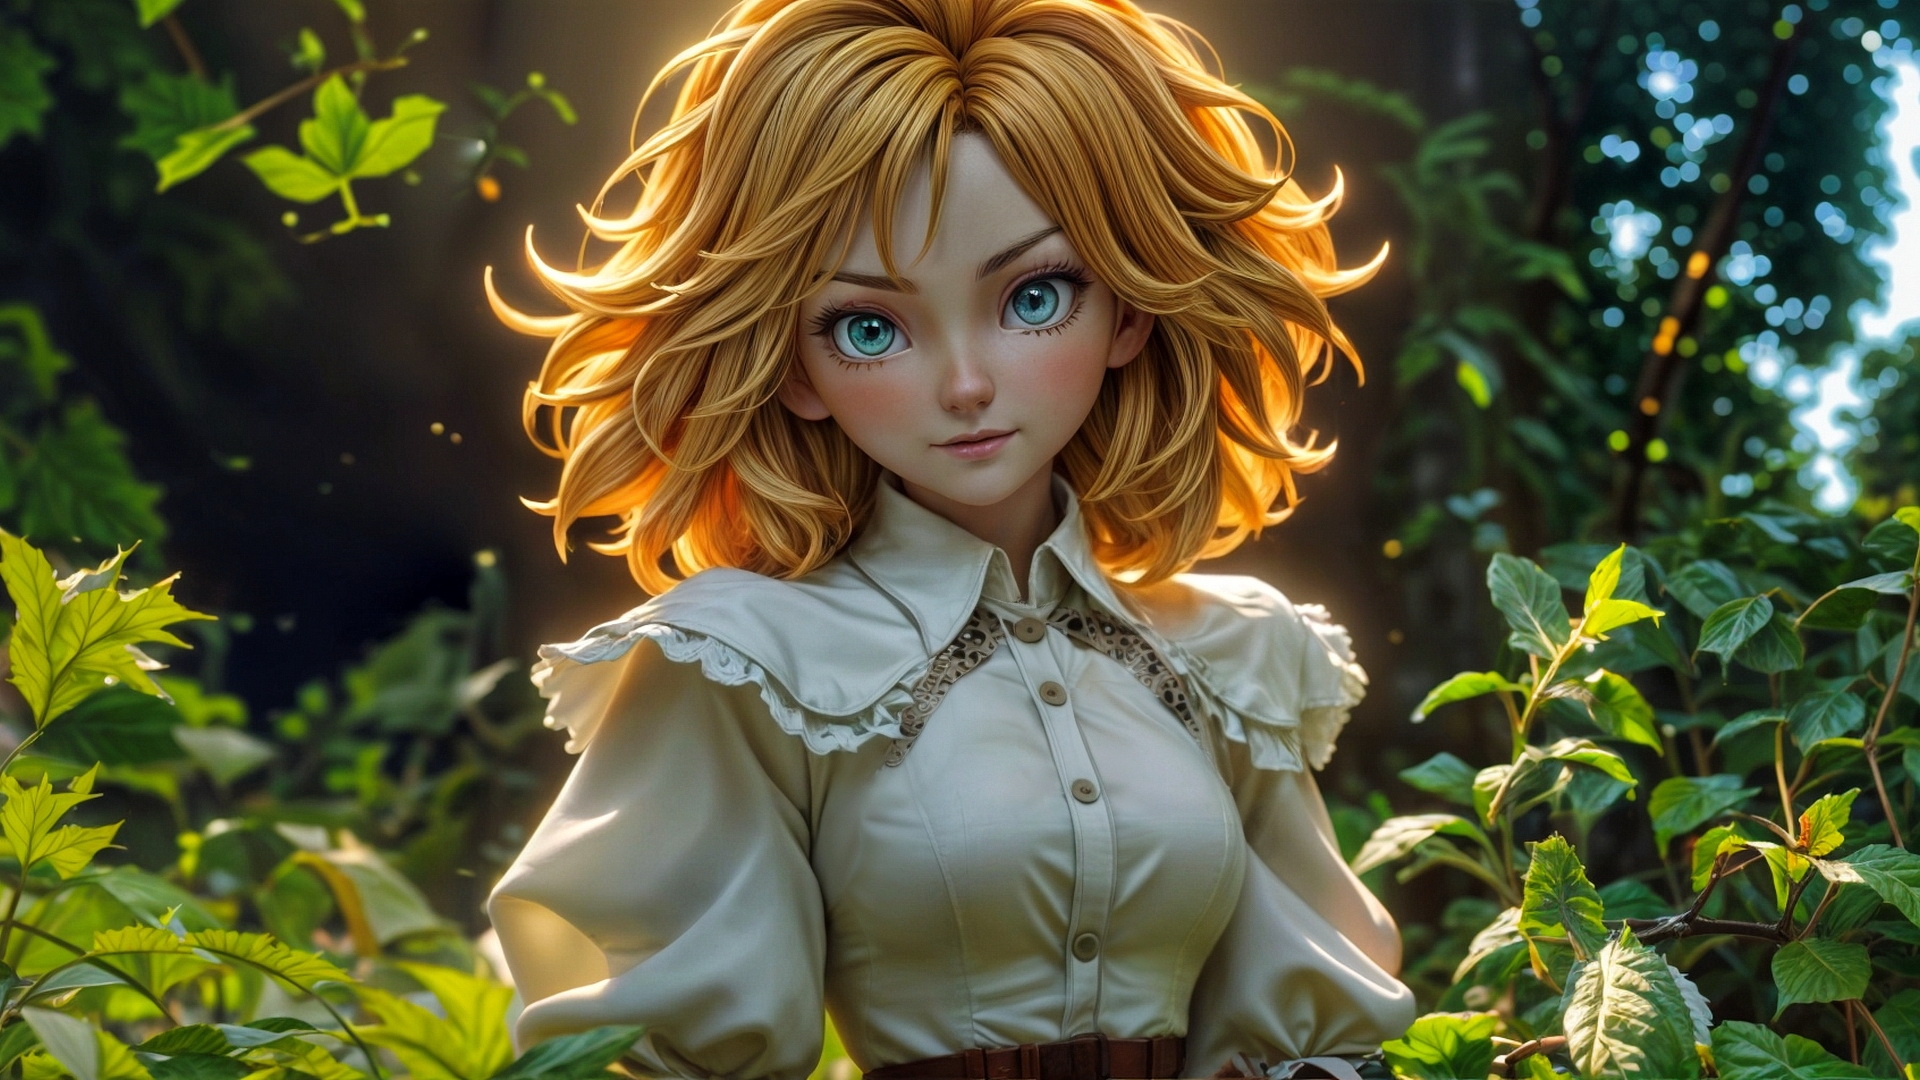 Бесплатное фото Портрет девушки в белой блузке на фоне леса